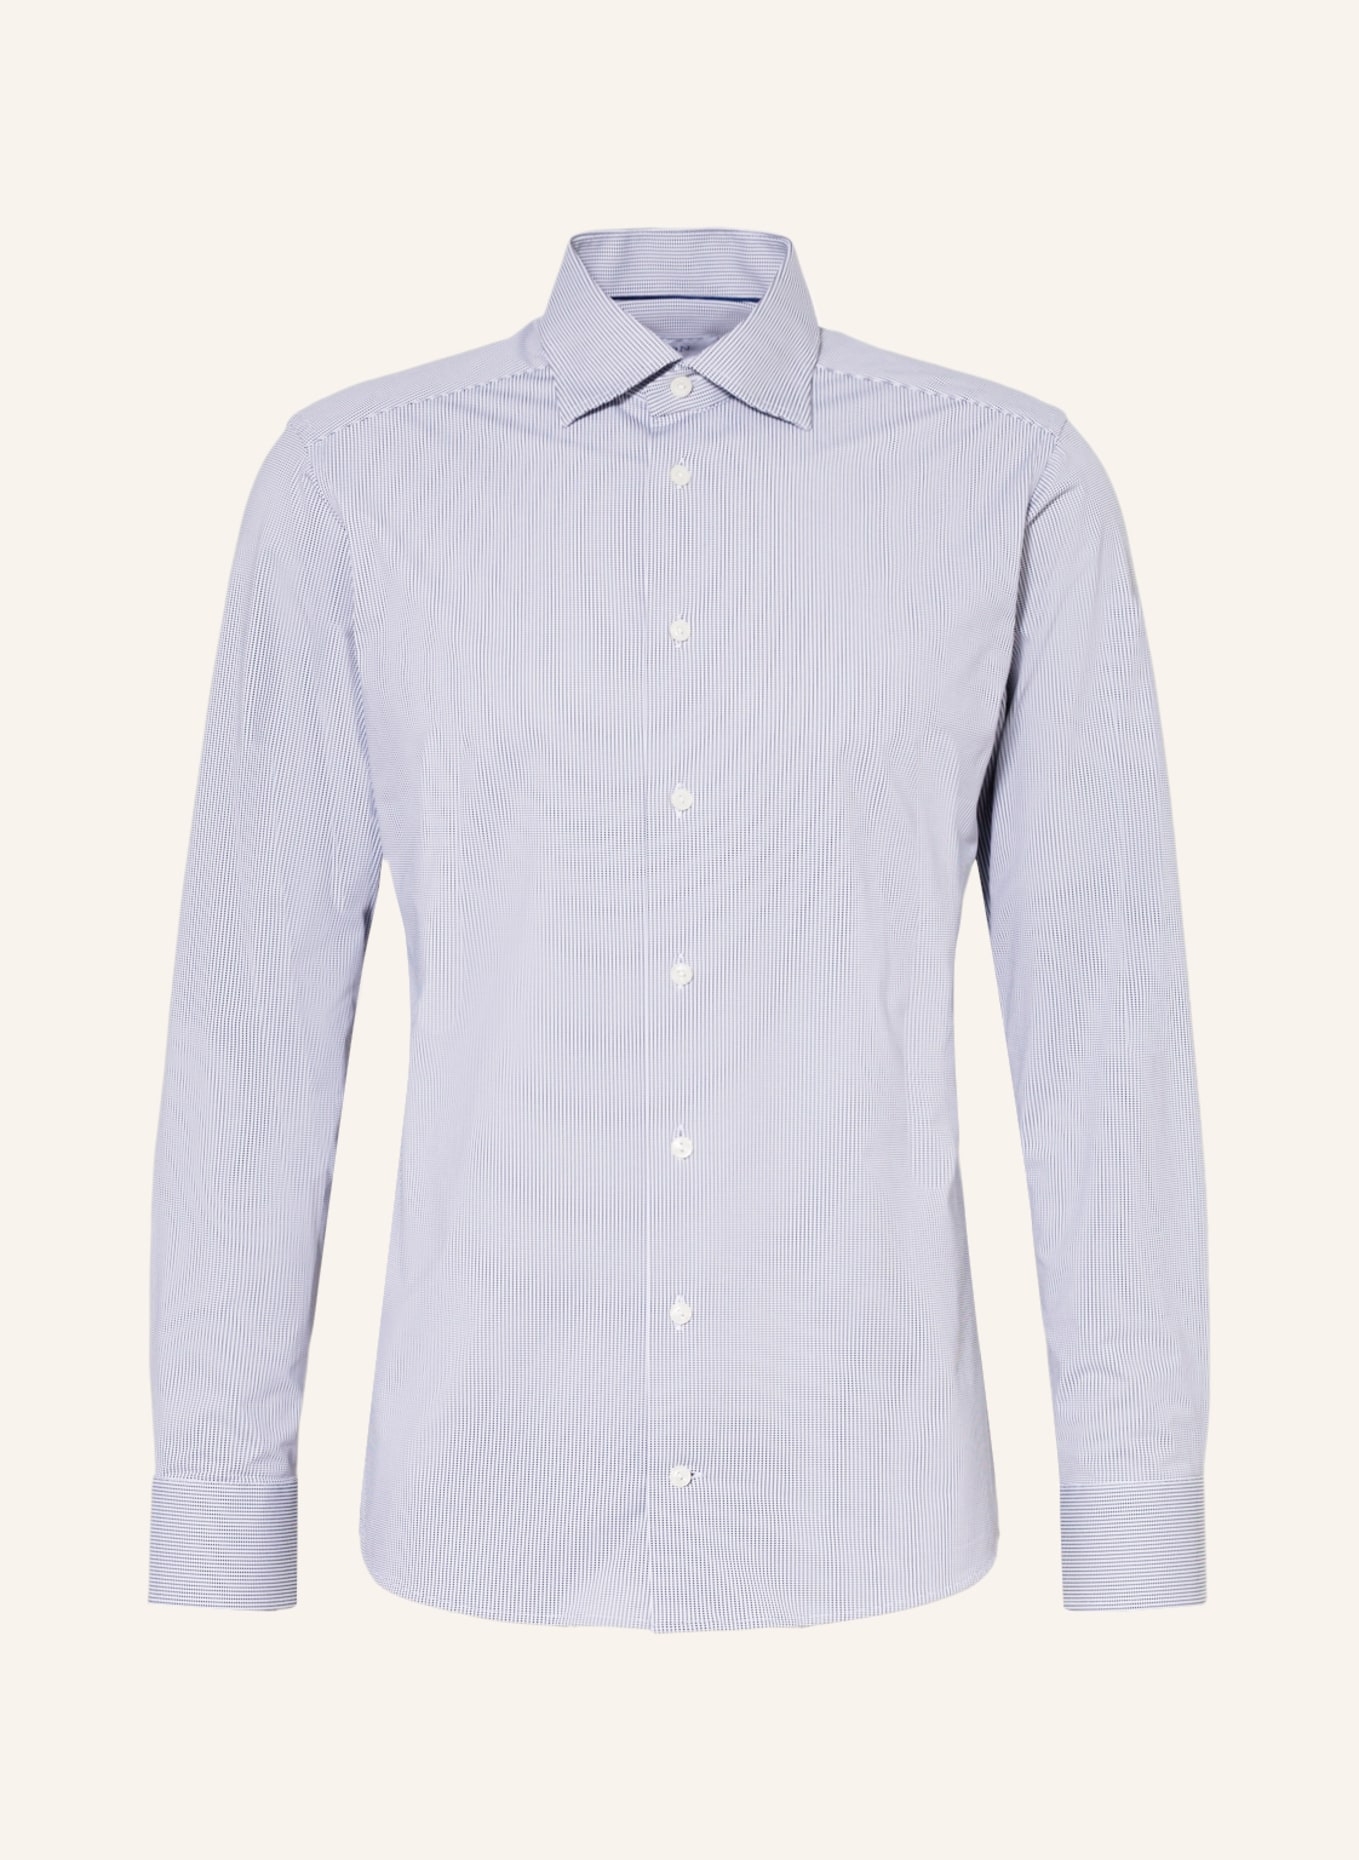 ETON Jerseyhemd Slim Fit , Farbe: WEISS/ DUNKELBLAU (Bild 1)